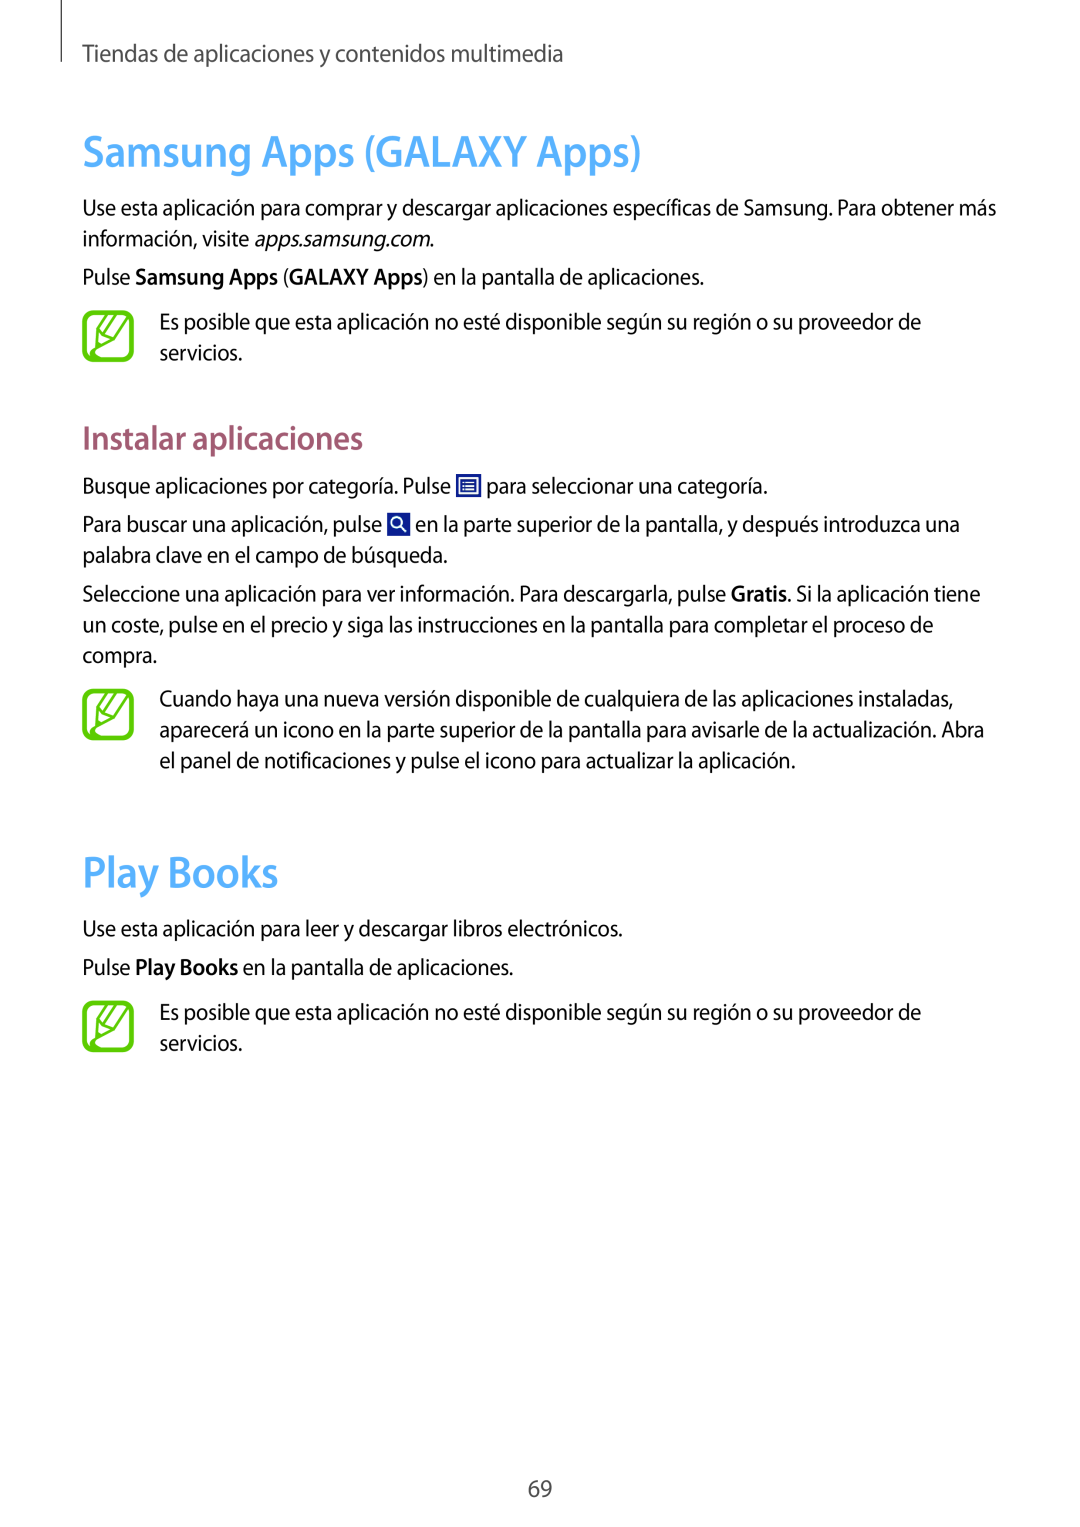 Samsung SM-T2100ZWAPHE manual Samsung Apps GALAXY Apps, Play Books, Tiendas de aplicaciones y contenidos multimedia 